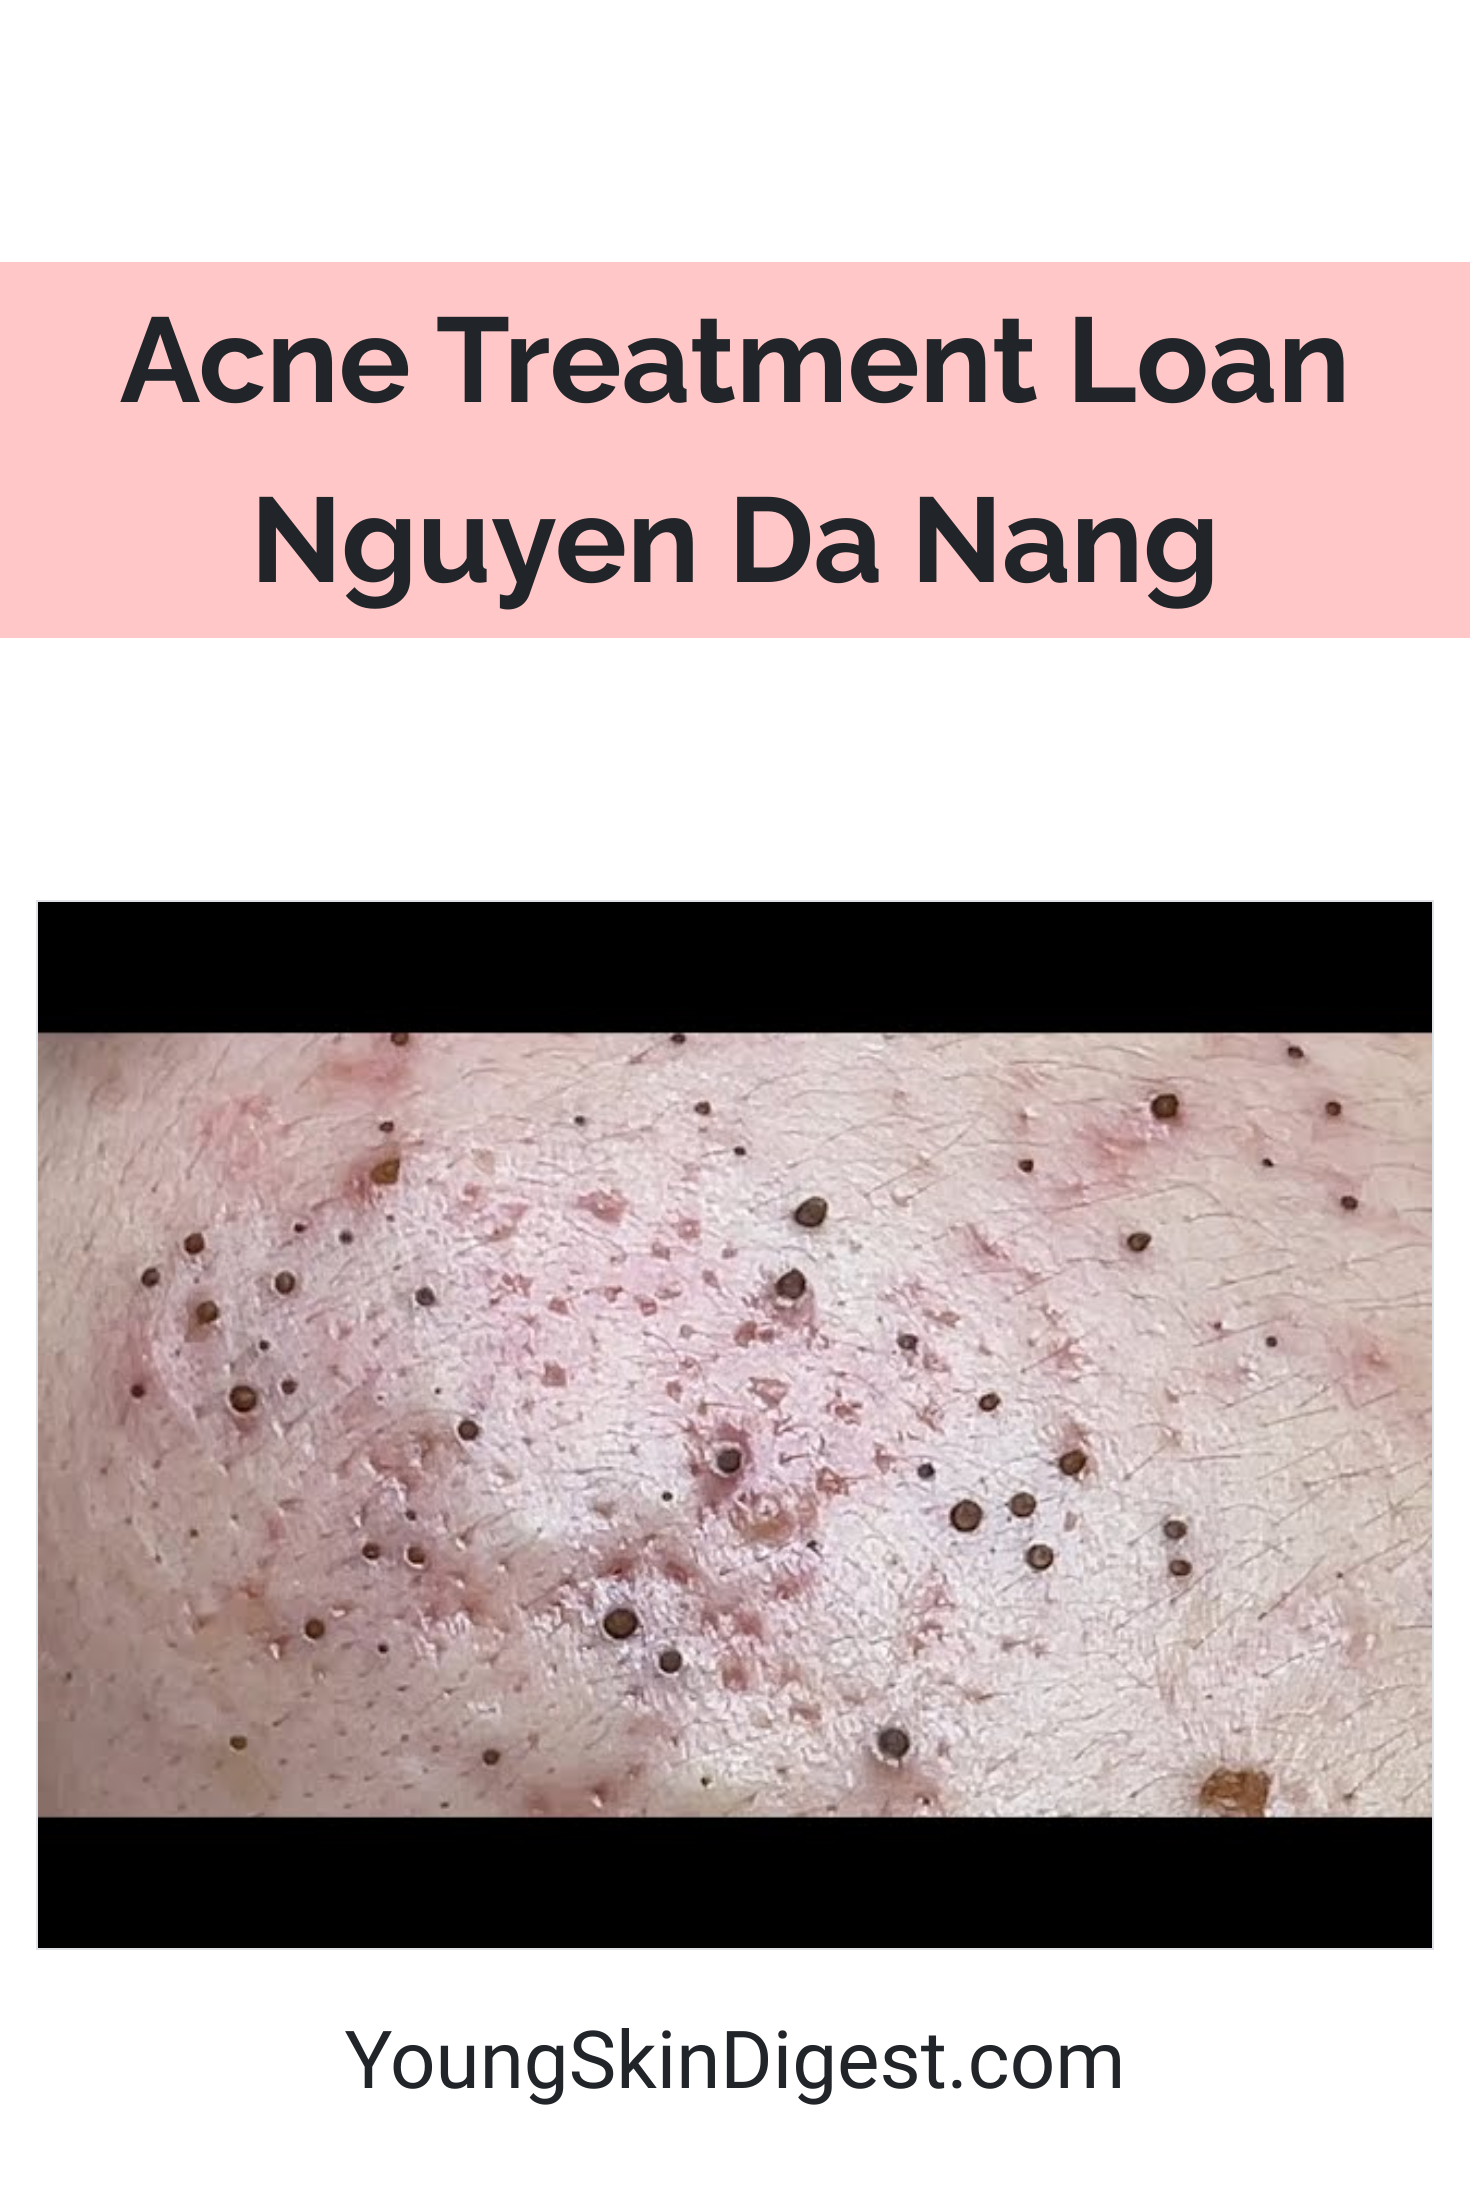 Acne Treatment Loan Nguyen Da Nang Young Skin Digest